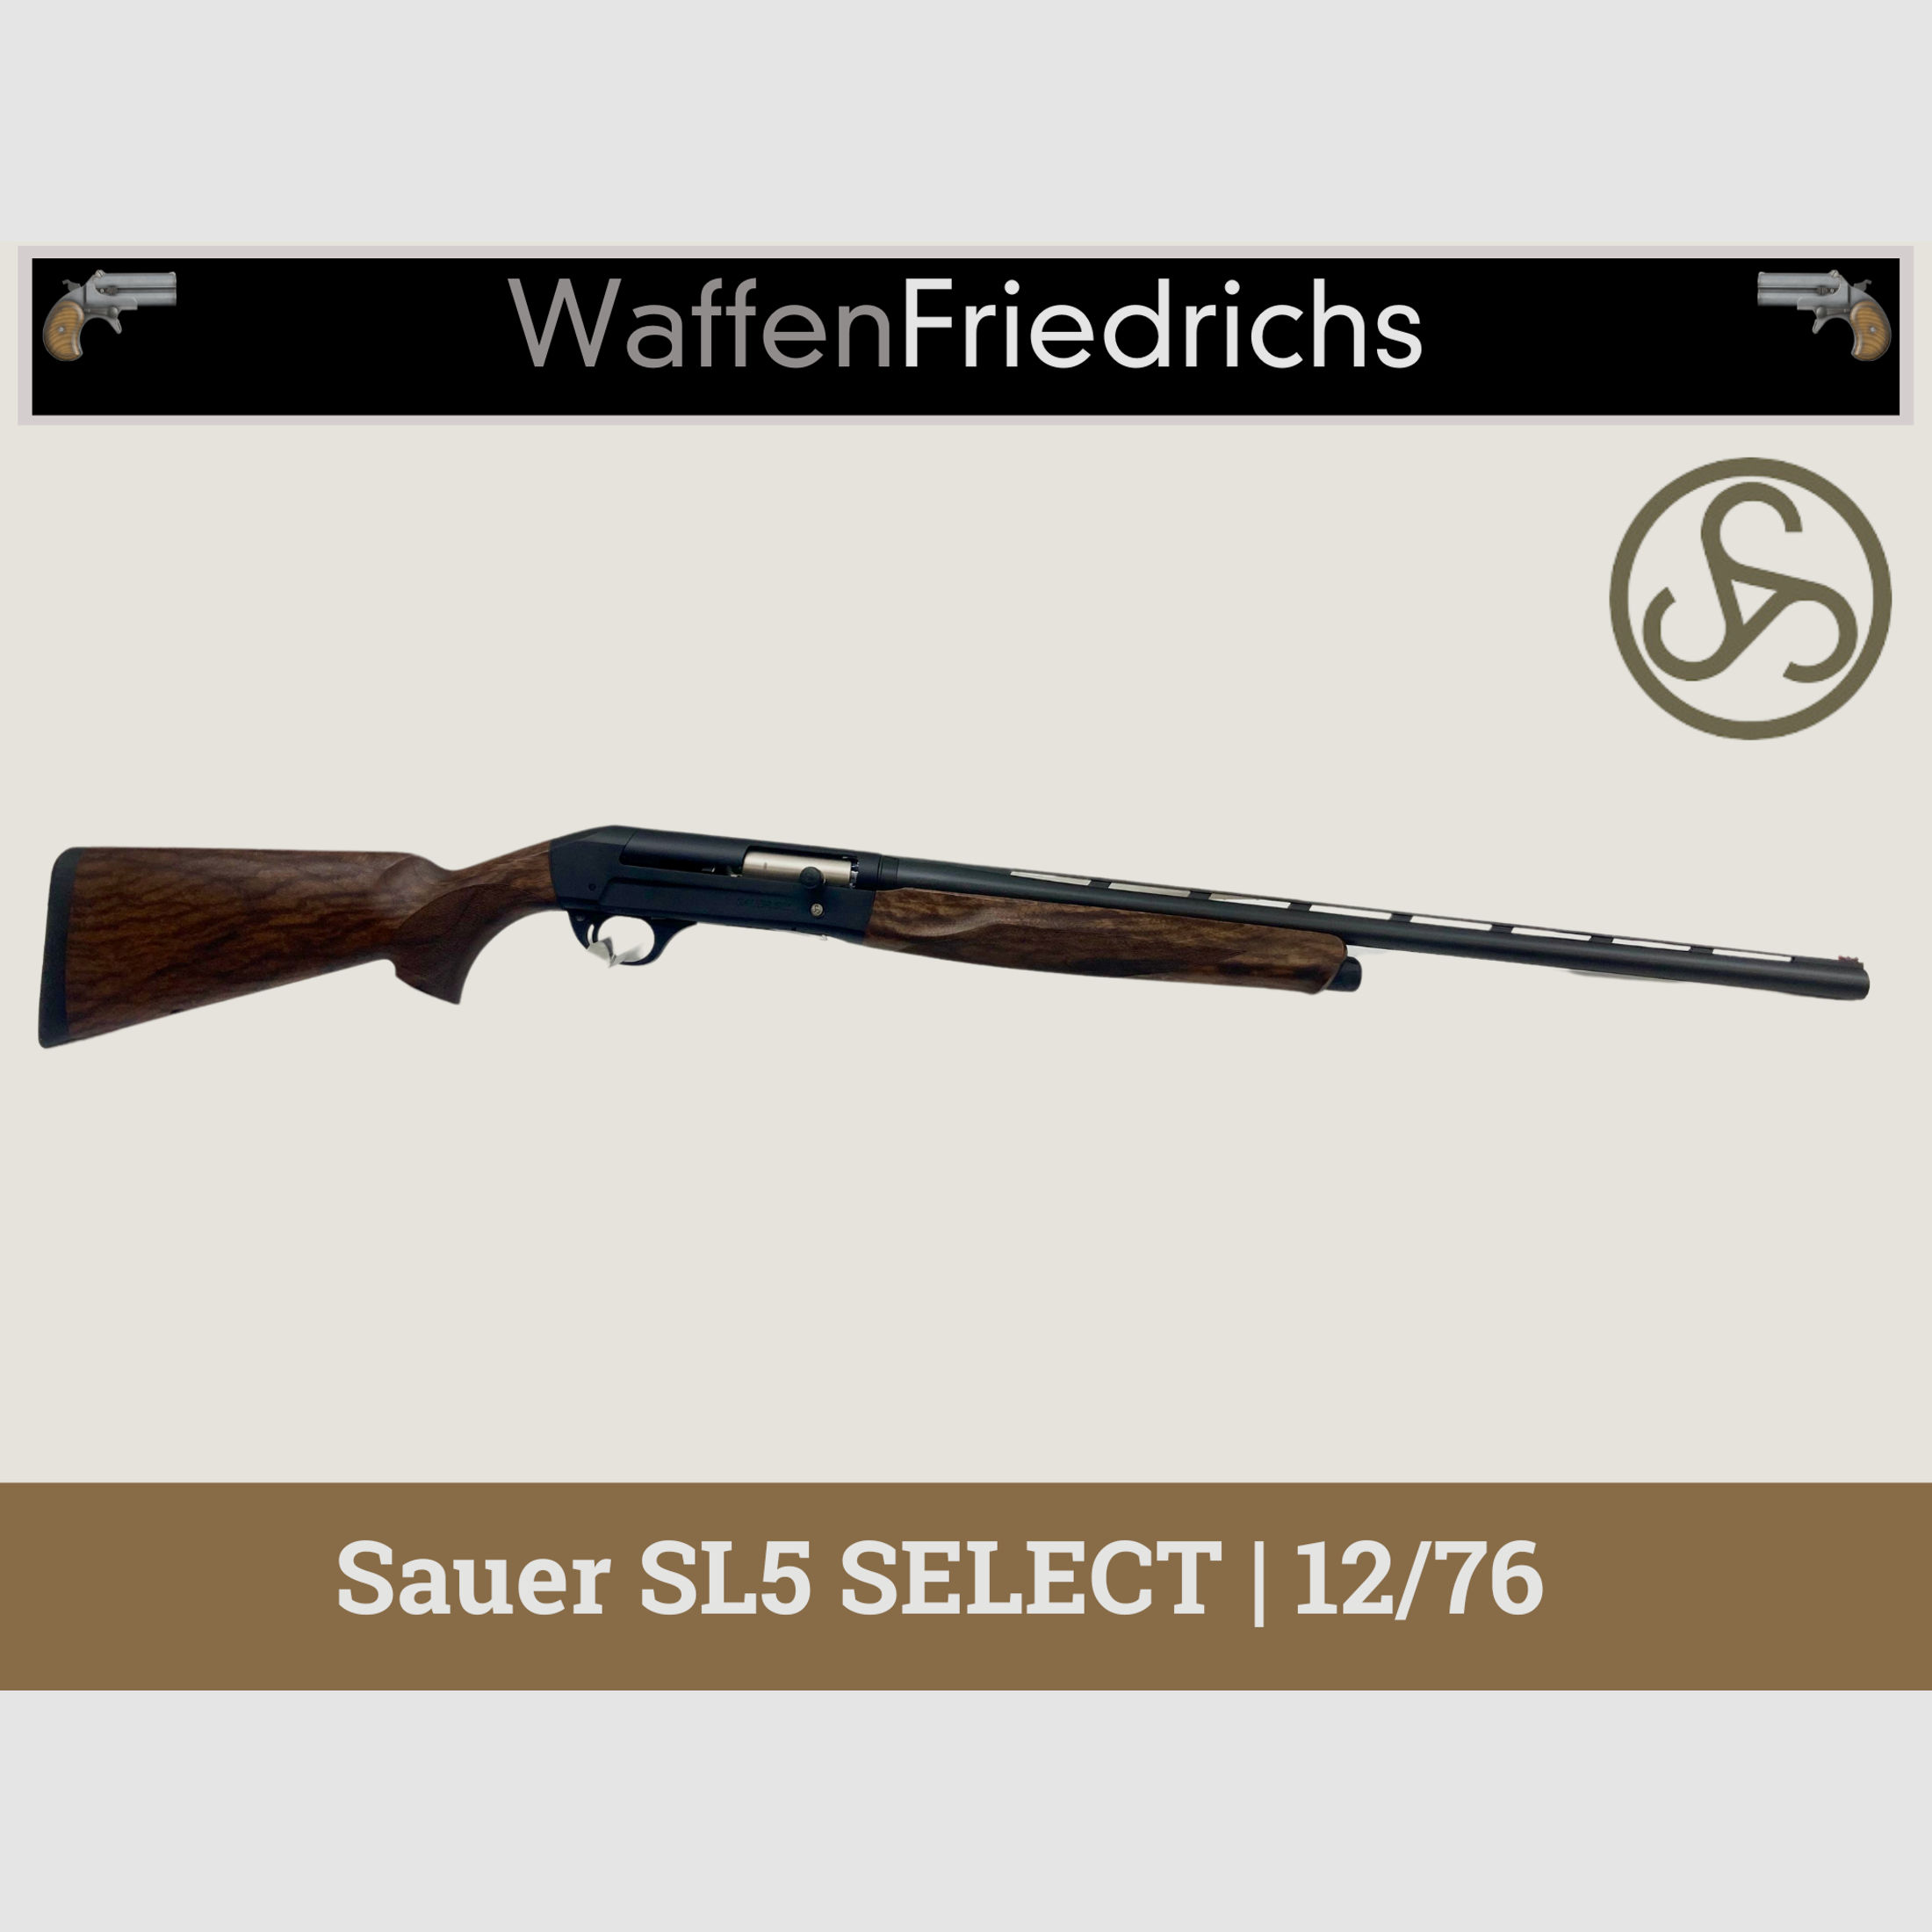 Sauer SL5 SELECT Selbstladeflinte - WaffenFriedrichs